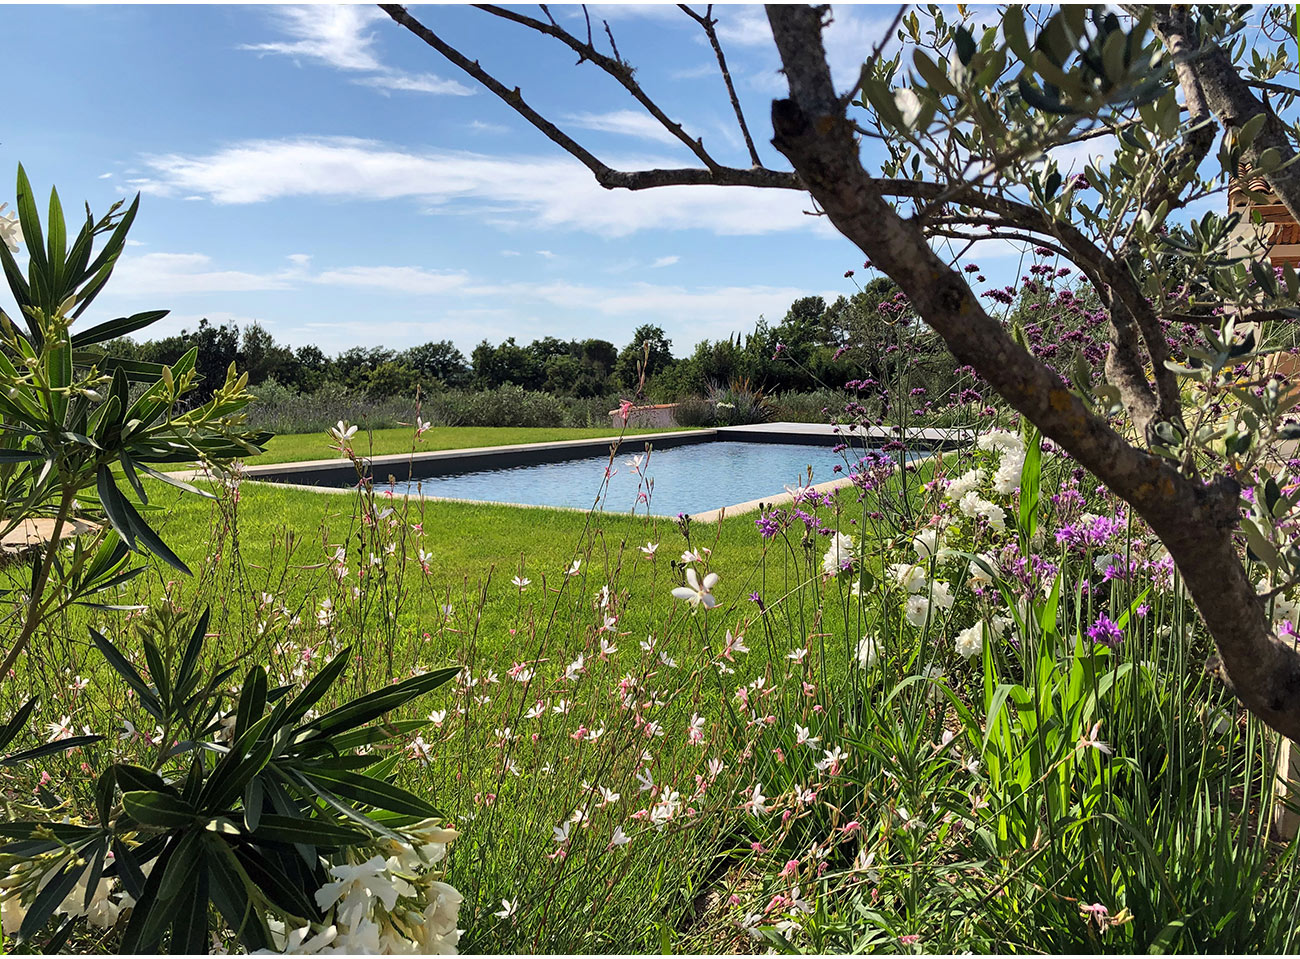 Atelier Naudier - Architecte paysagiste concepteur - Montpellier & Aix en Provence - Jardin et piscine en méditerranée